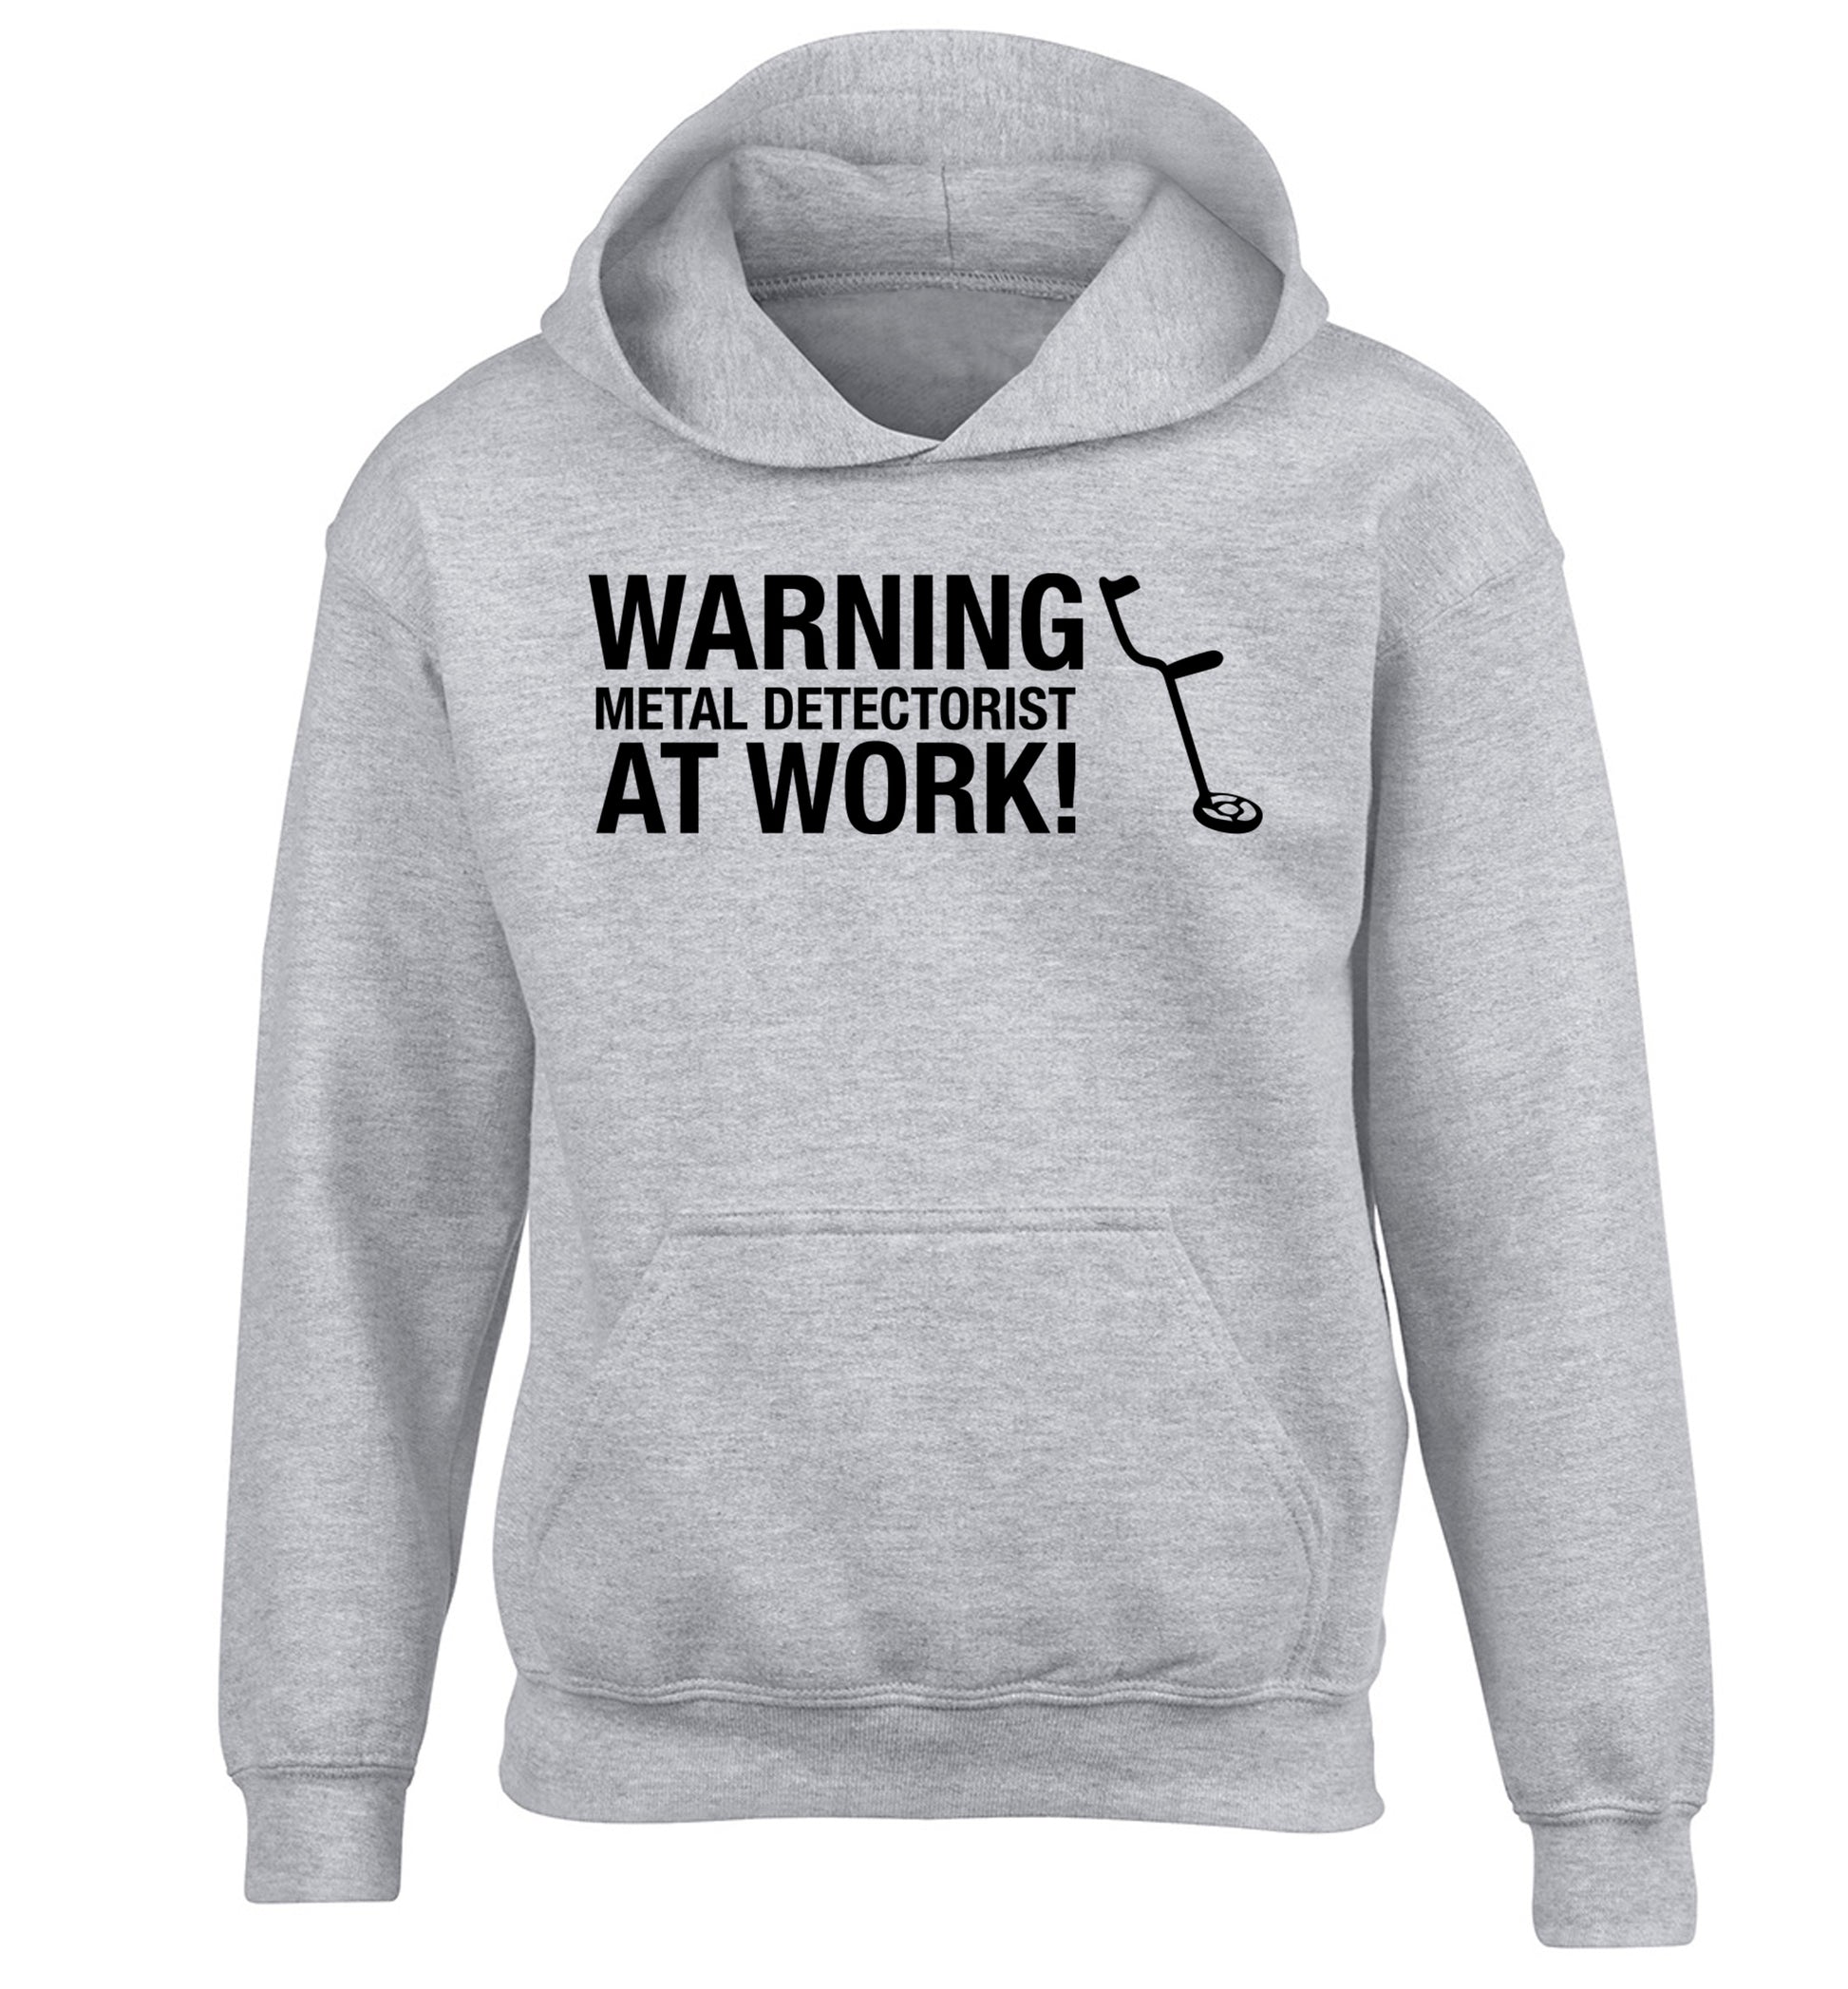 Warning metal detectorist at work! children's grey hoodie 12-13 Years